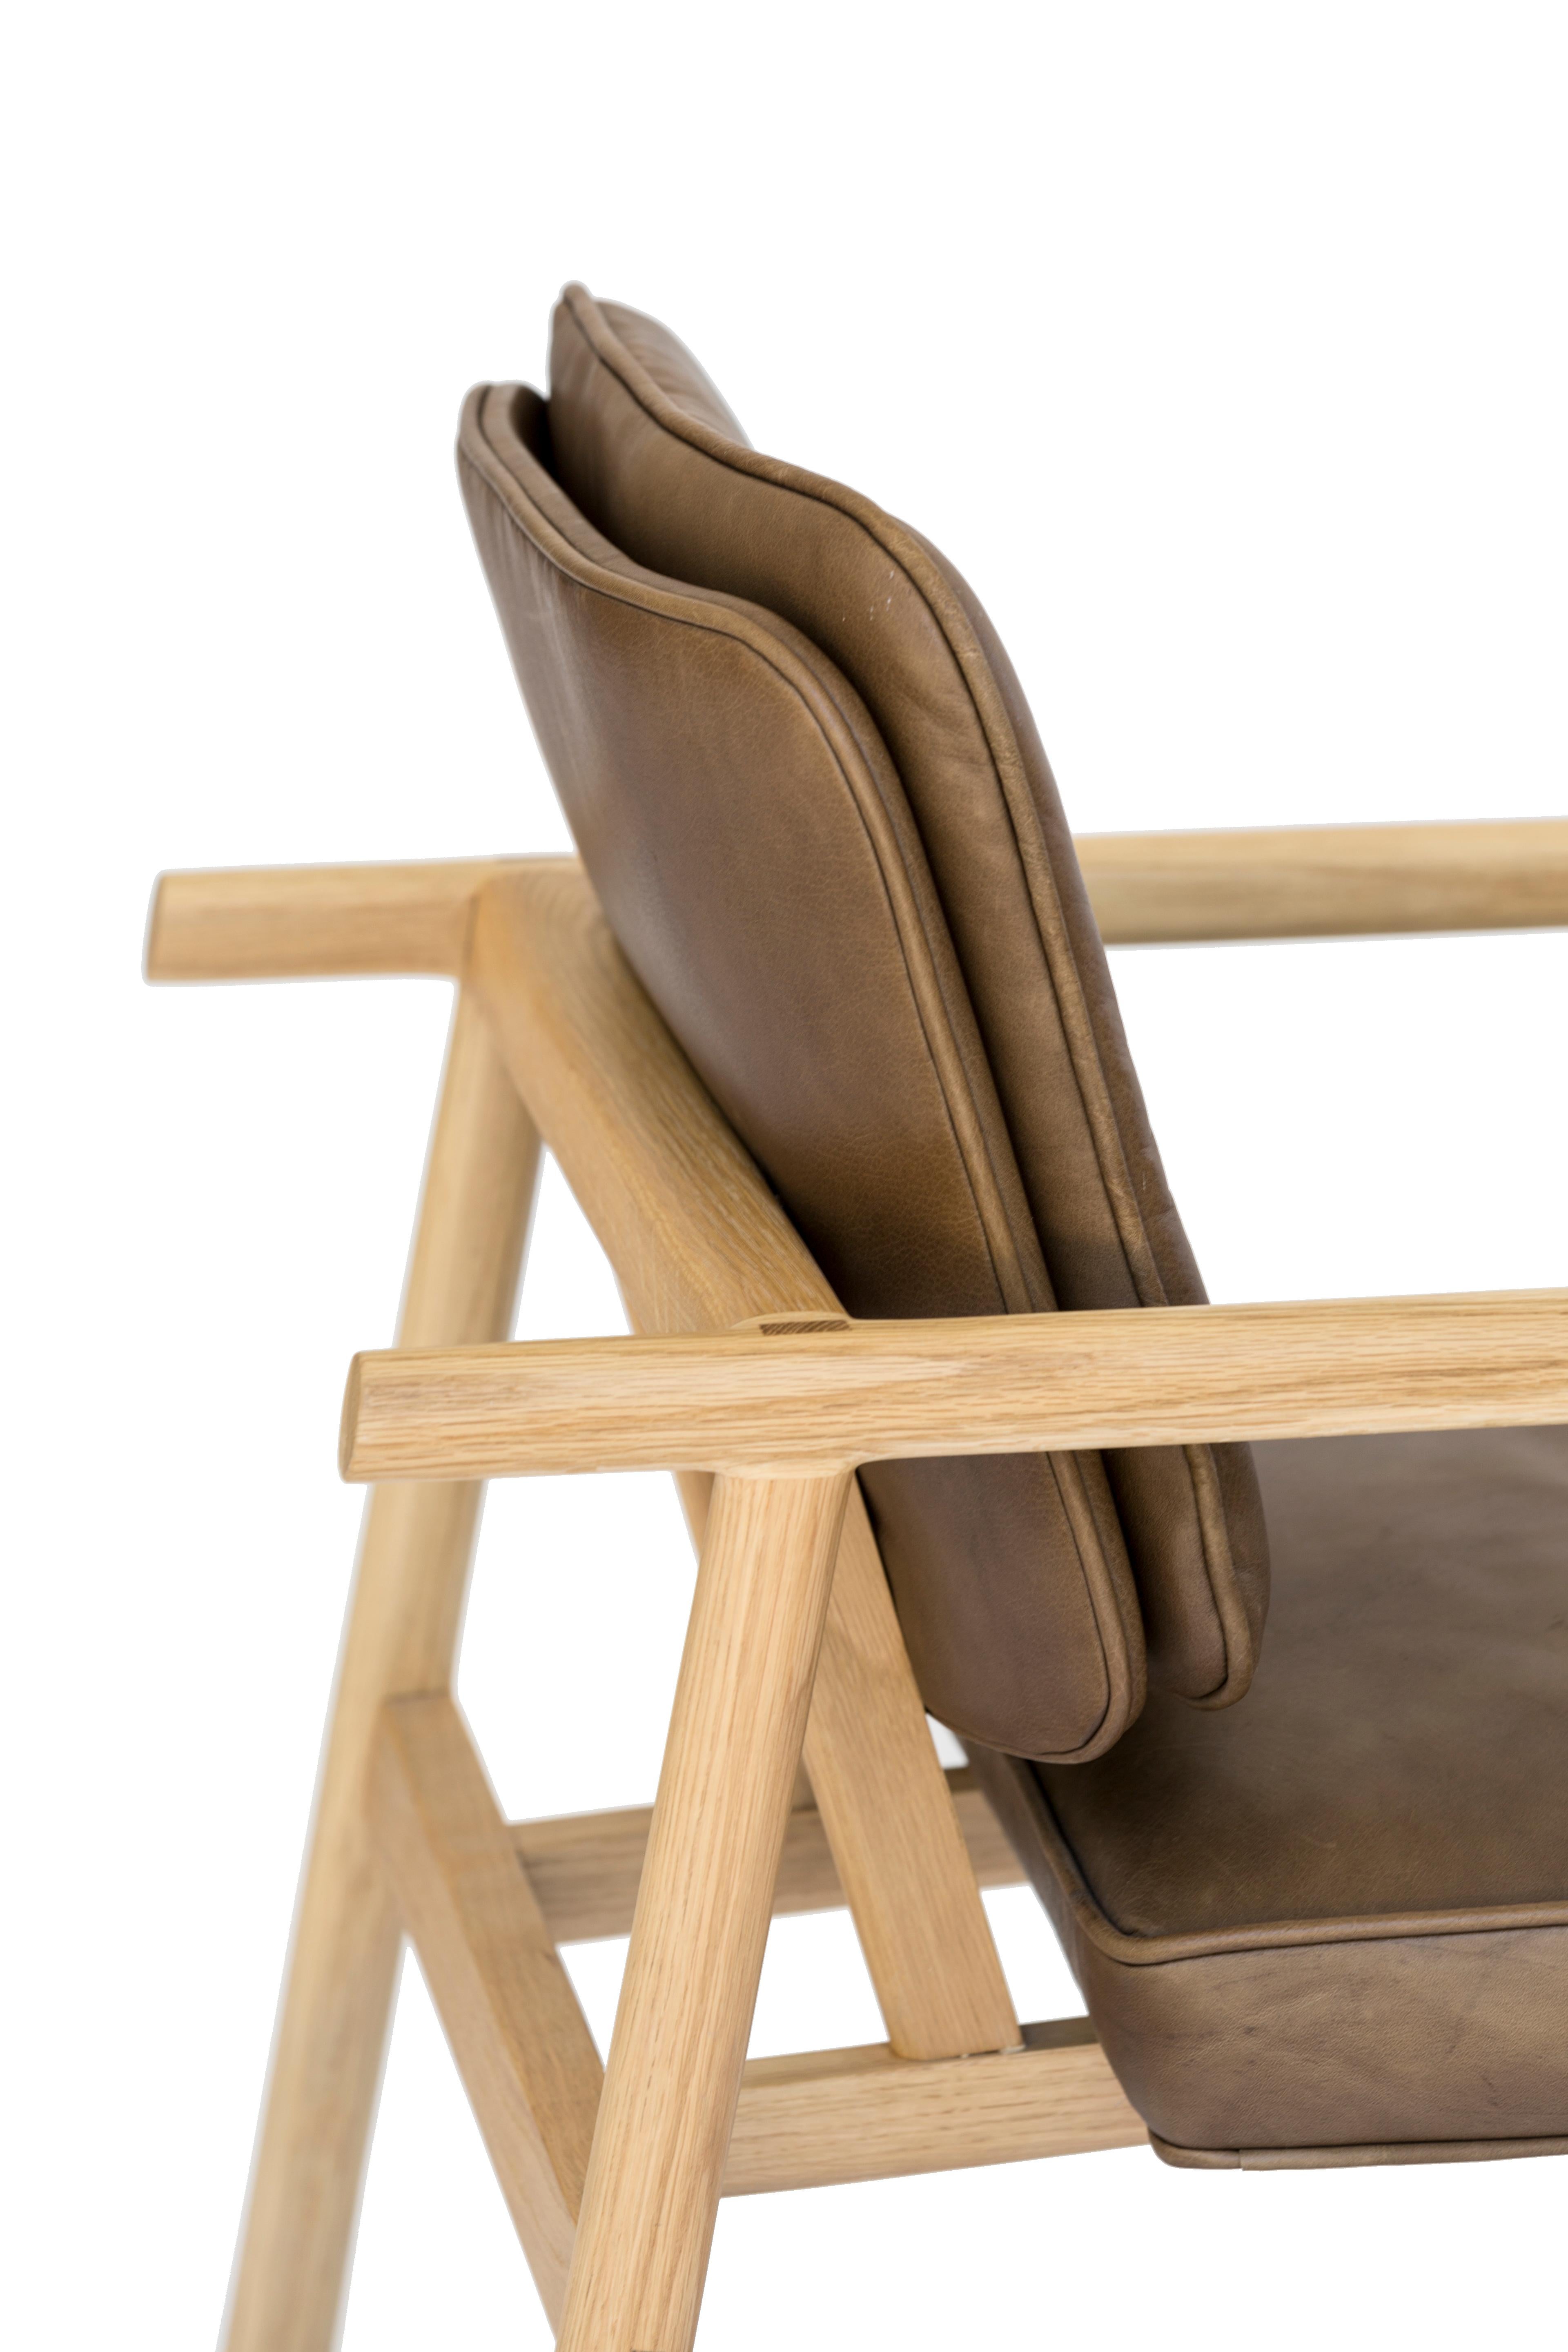 Massivholzkonstruktion mit handgeschnittenen Tischlerarbeiten und individuell gepolstertem Sitz und Rückenlehne. Dieser Stuhl ist in Natureiche und olivfarbenem Leder gehalten.

Vorrätige Lederauswahl: schwarz, oliv, camel oder vegtan